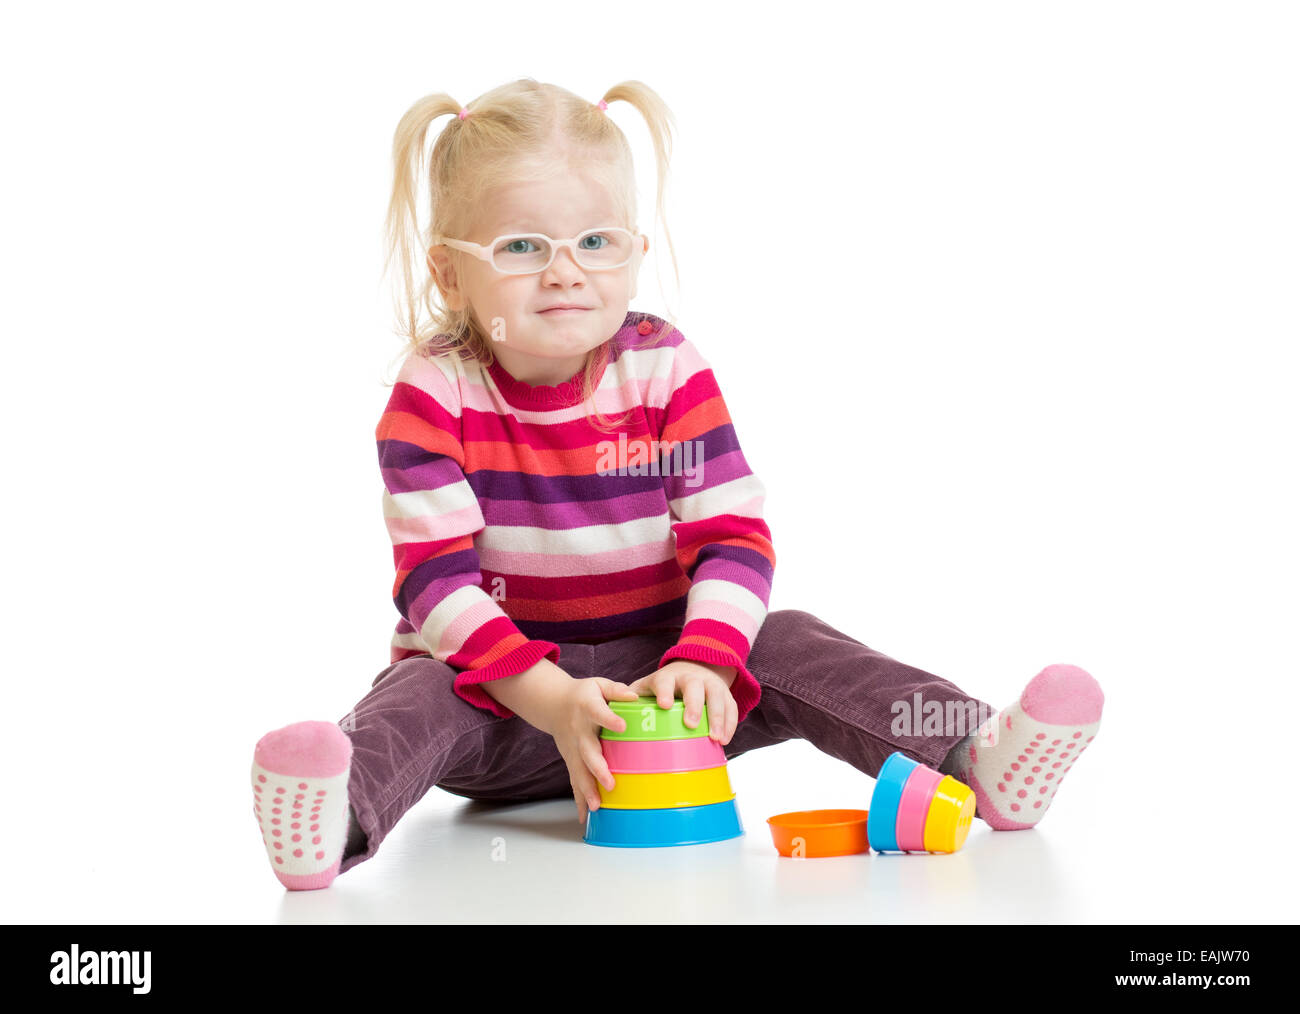 Lustiges Kind in Eyeglases spielen bunte Pyramide Spielzeug isoliert Stockfoto